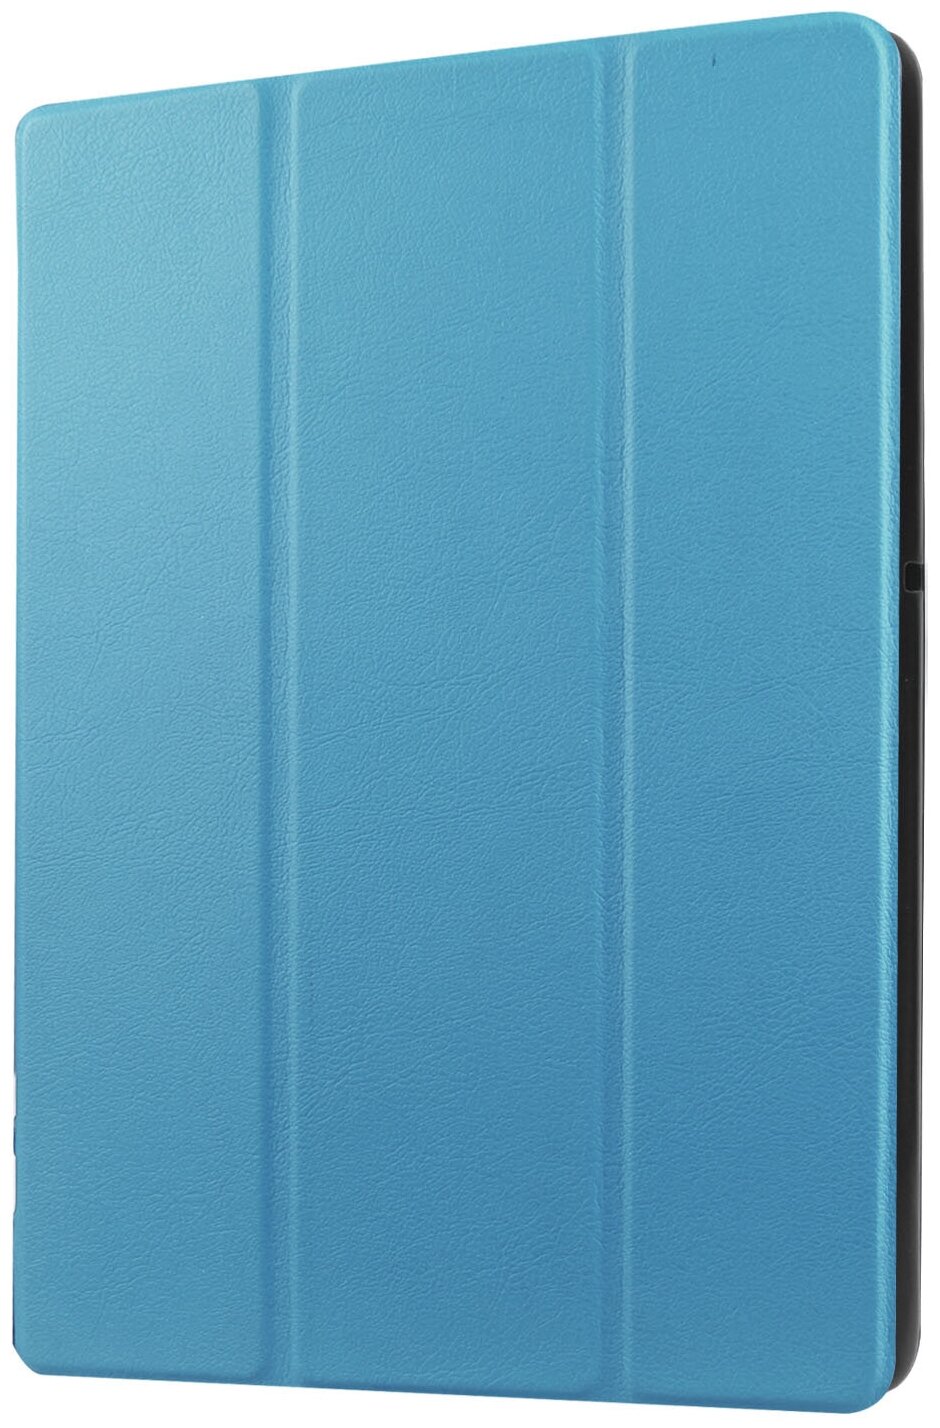 Чехол-обложка MyPads для Lenovo Tab 4 8 Plus TB-8704F/N тонкий умный кожаный на пластиковой основе с трансформацией в подставку голубой